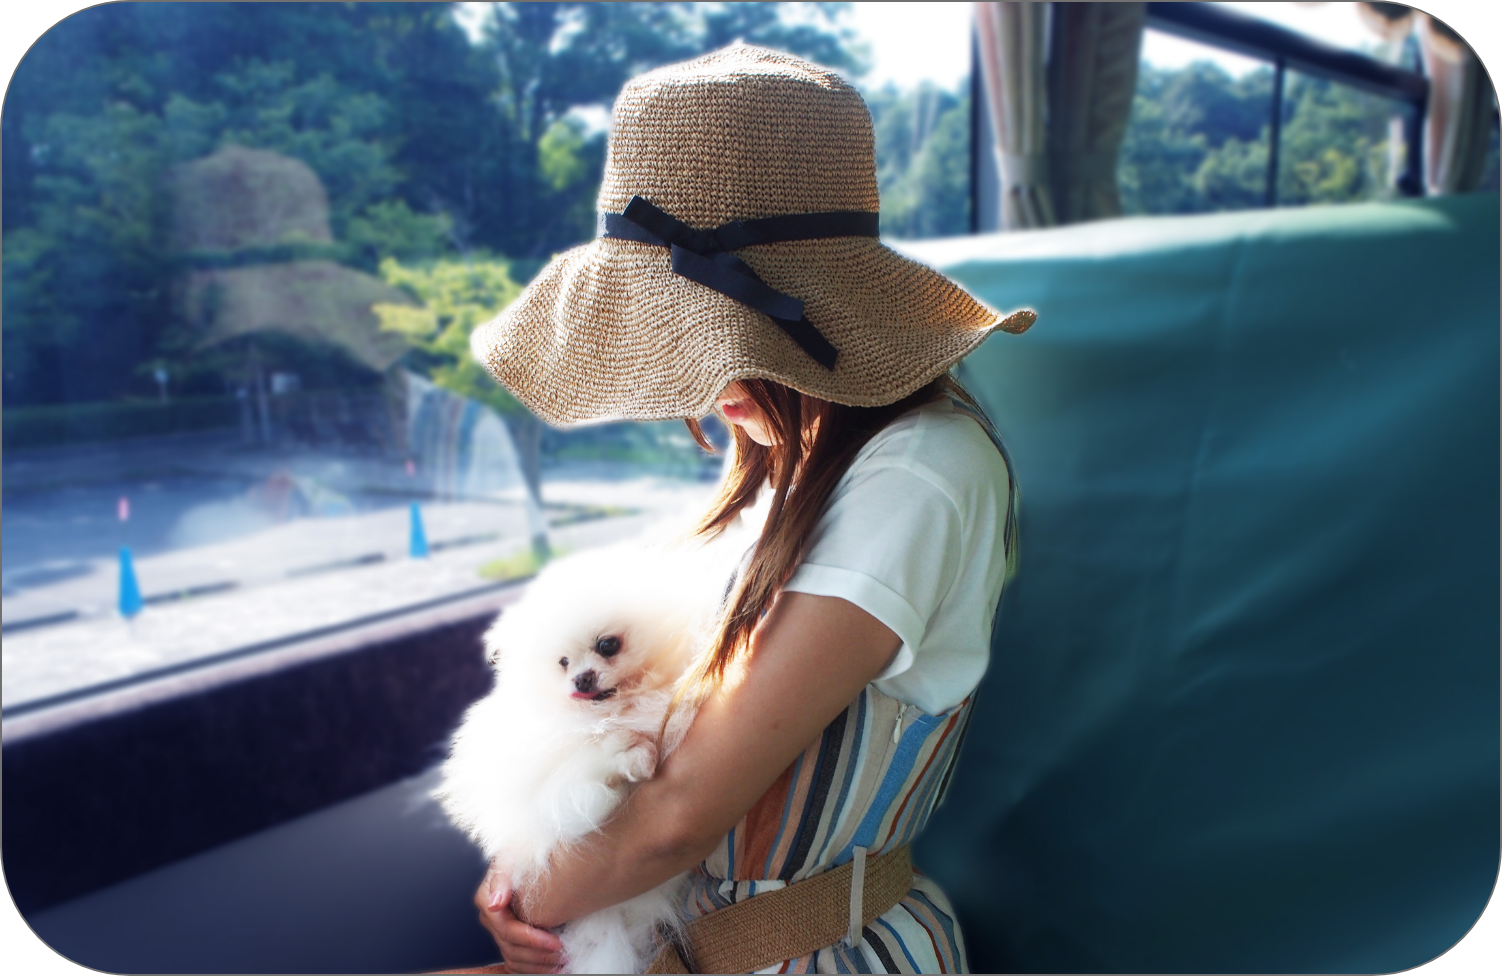 バスに乗っている女性と犬